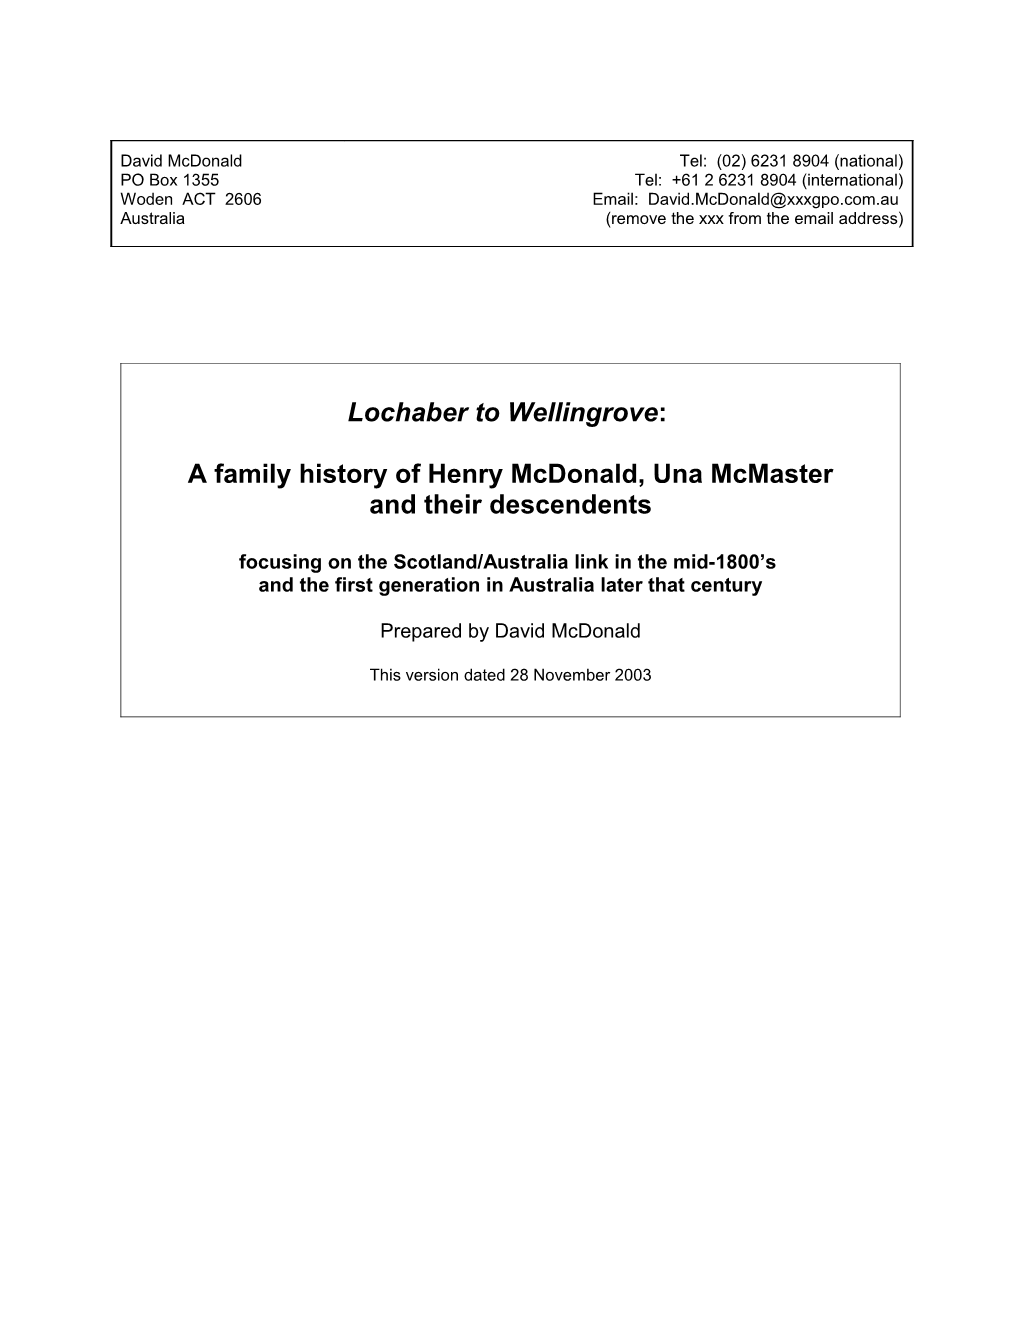 Mcdonald Family History